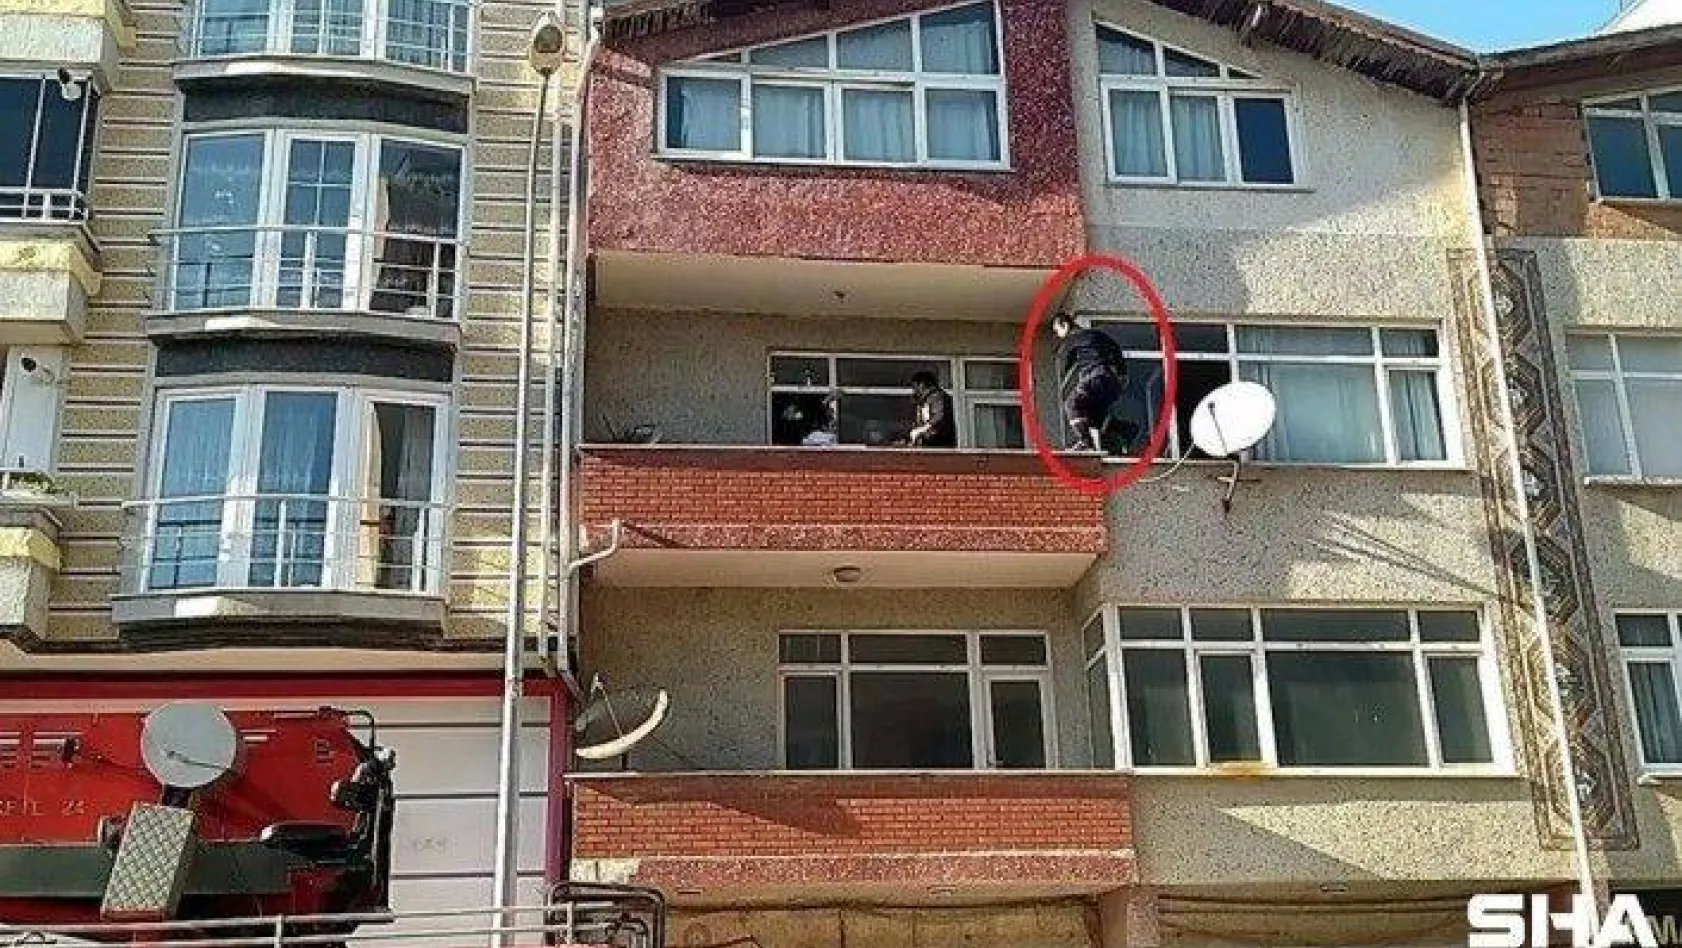 Tekirdağ'da korku dolu anlar kamerada: Atlamaya çalışan genci kurtarmak için balkondan balkona atladı